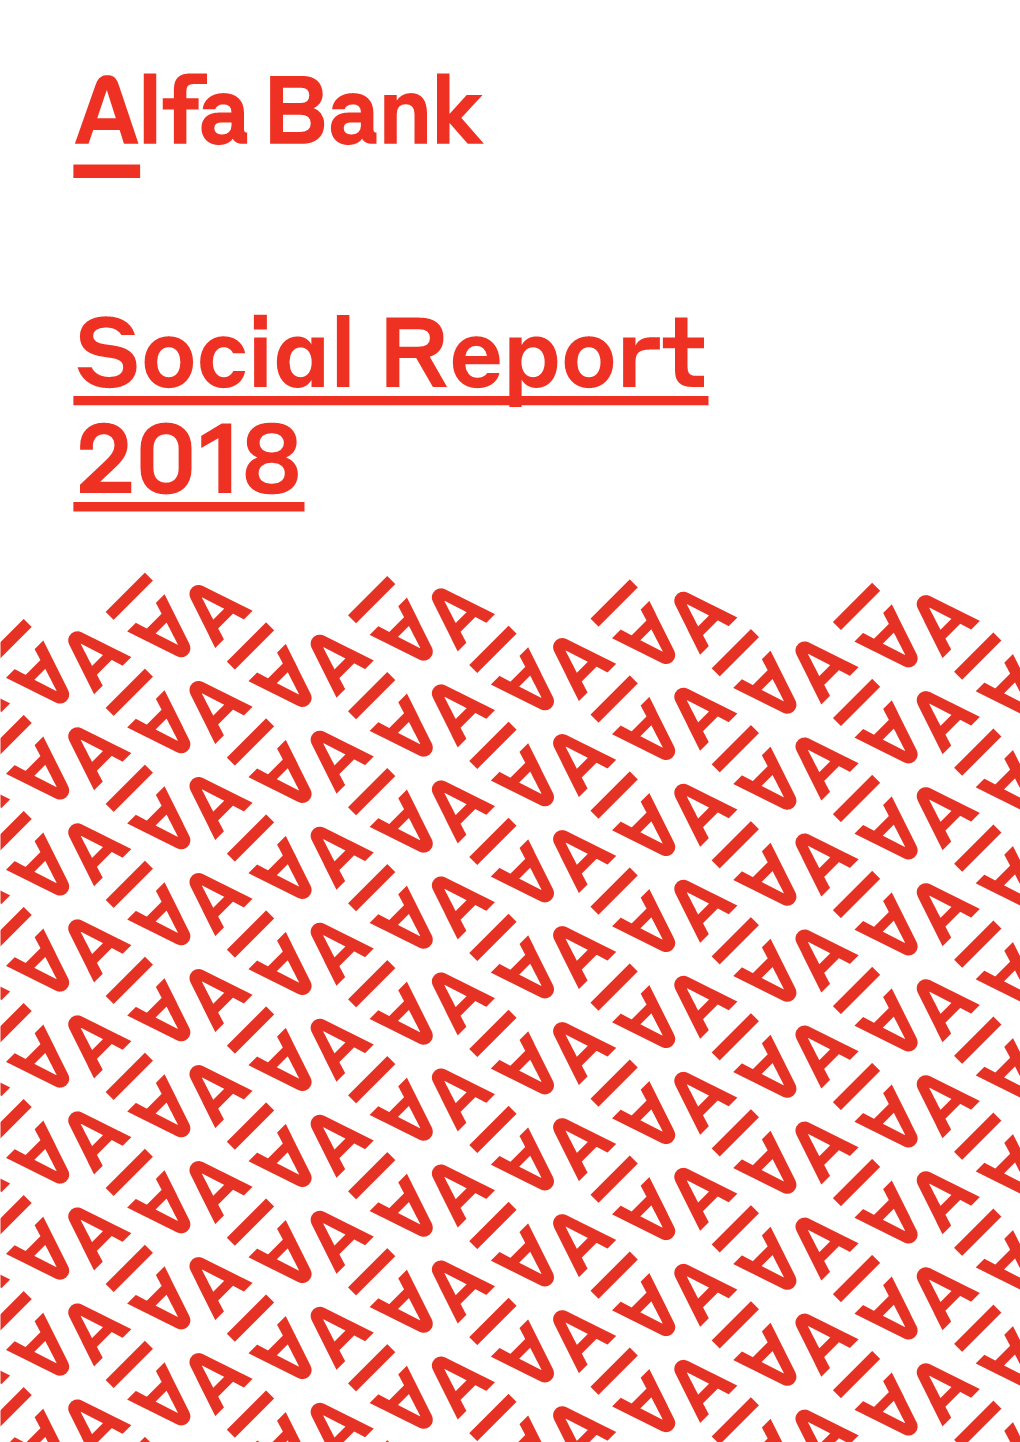 Social Report 2018 Contents